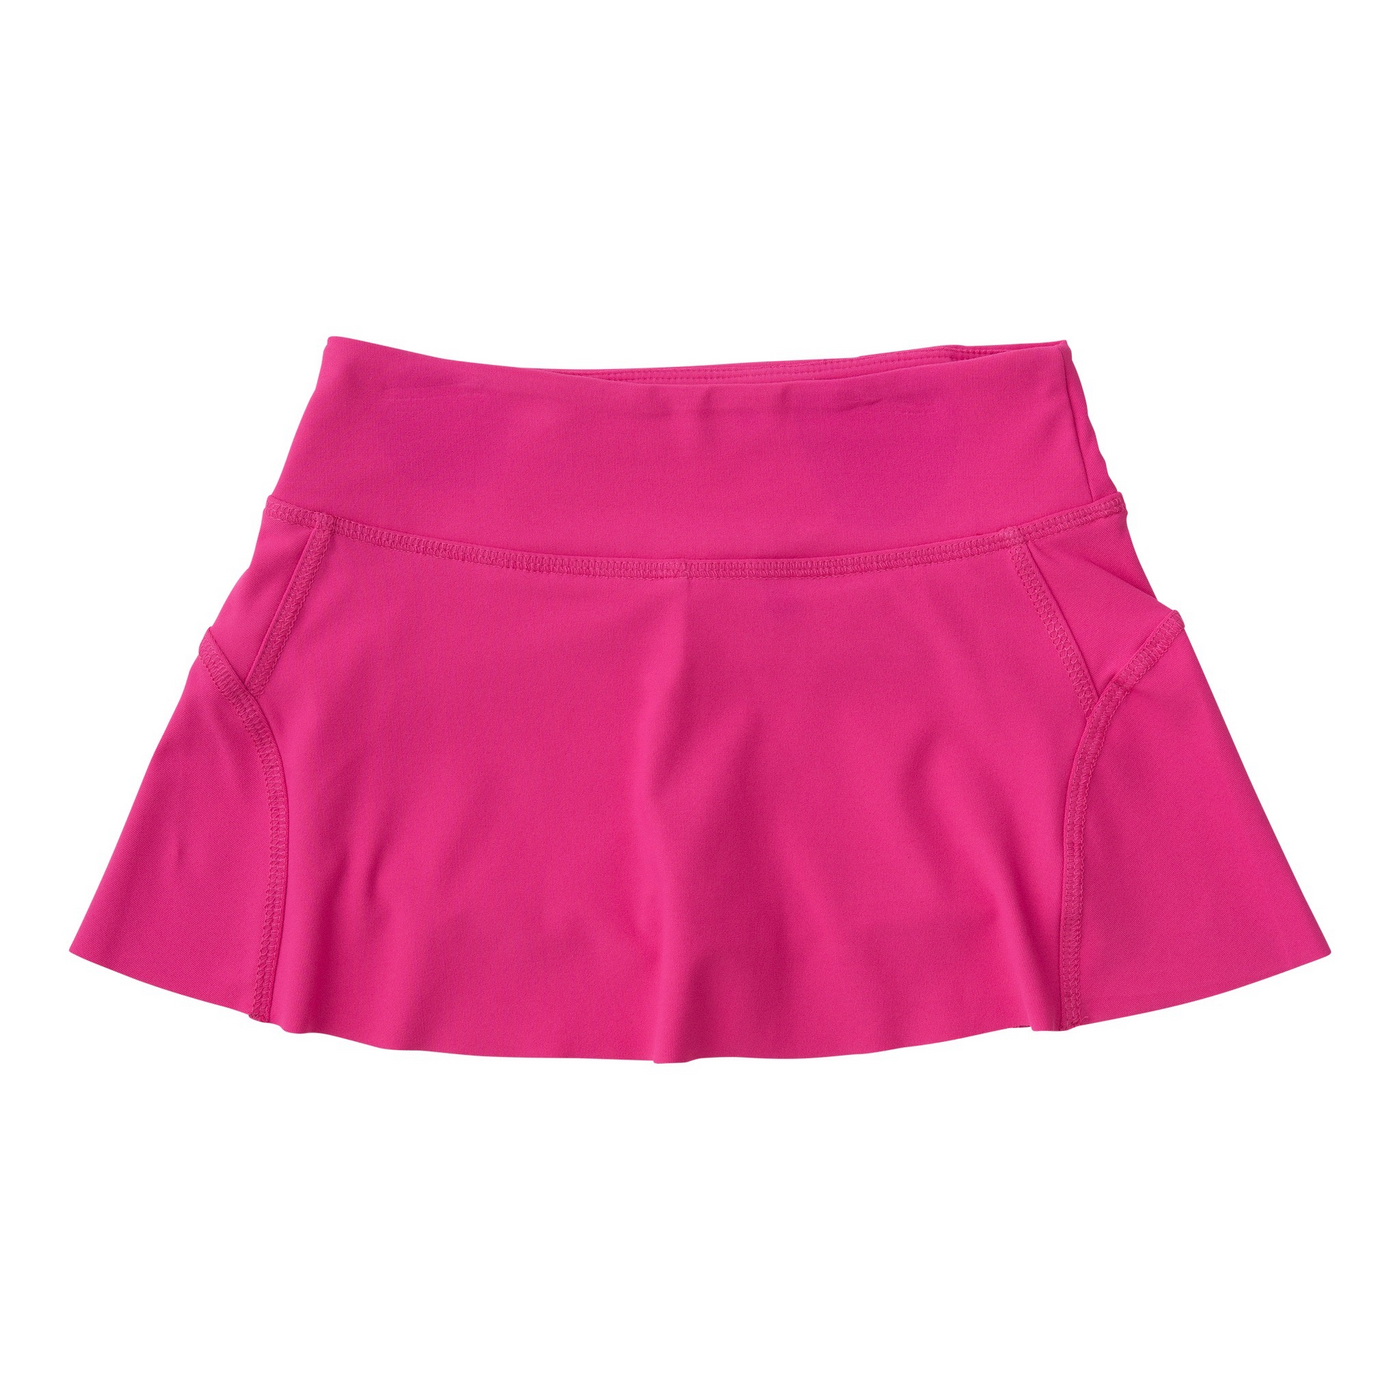 Tennis twirl skort - Cheeky Pink